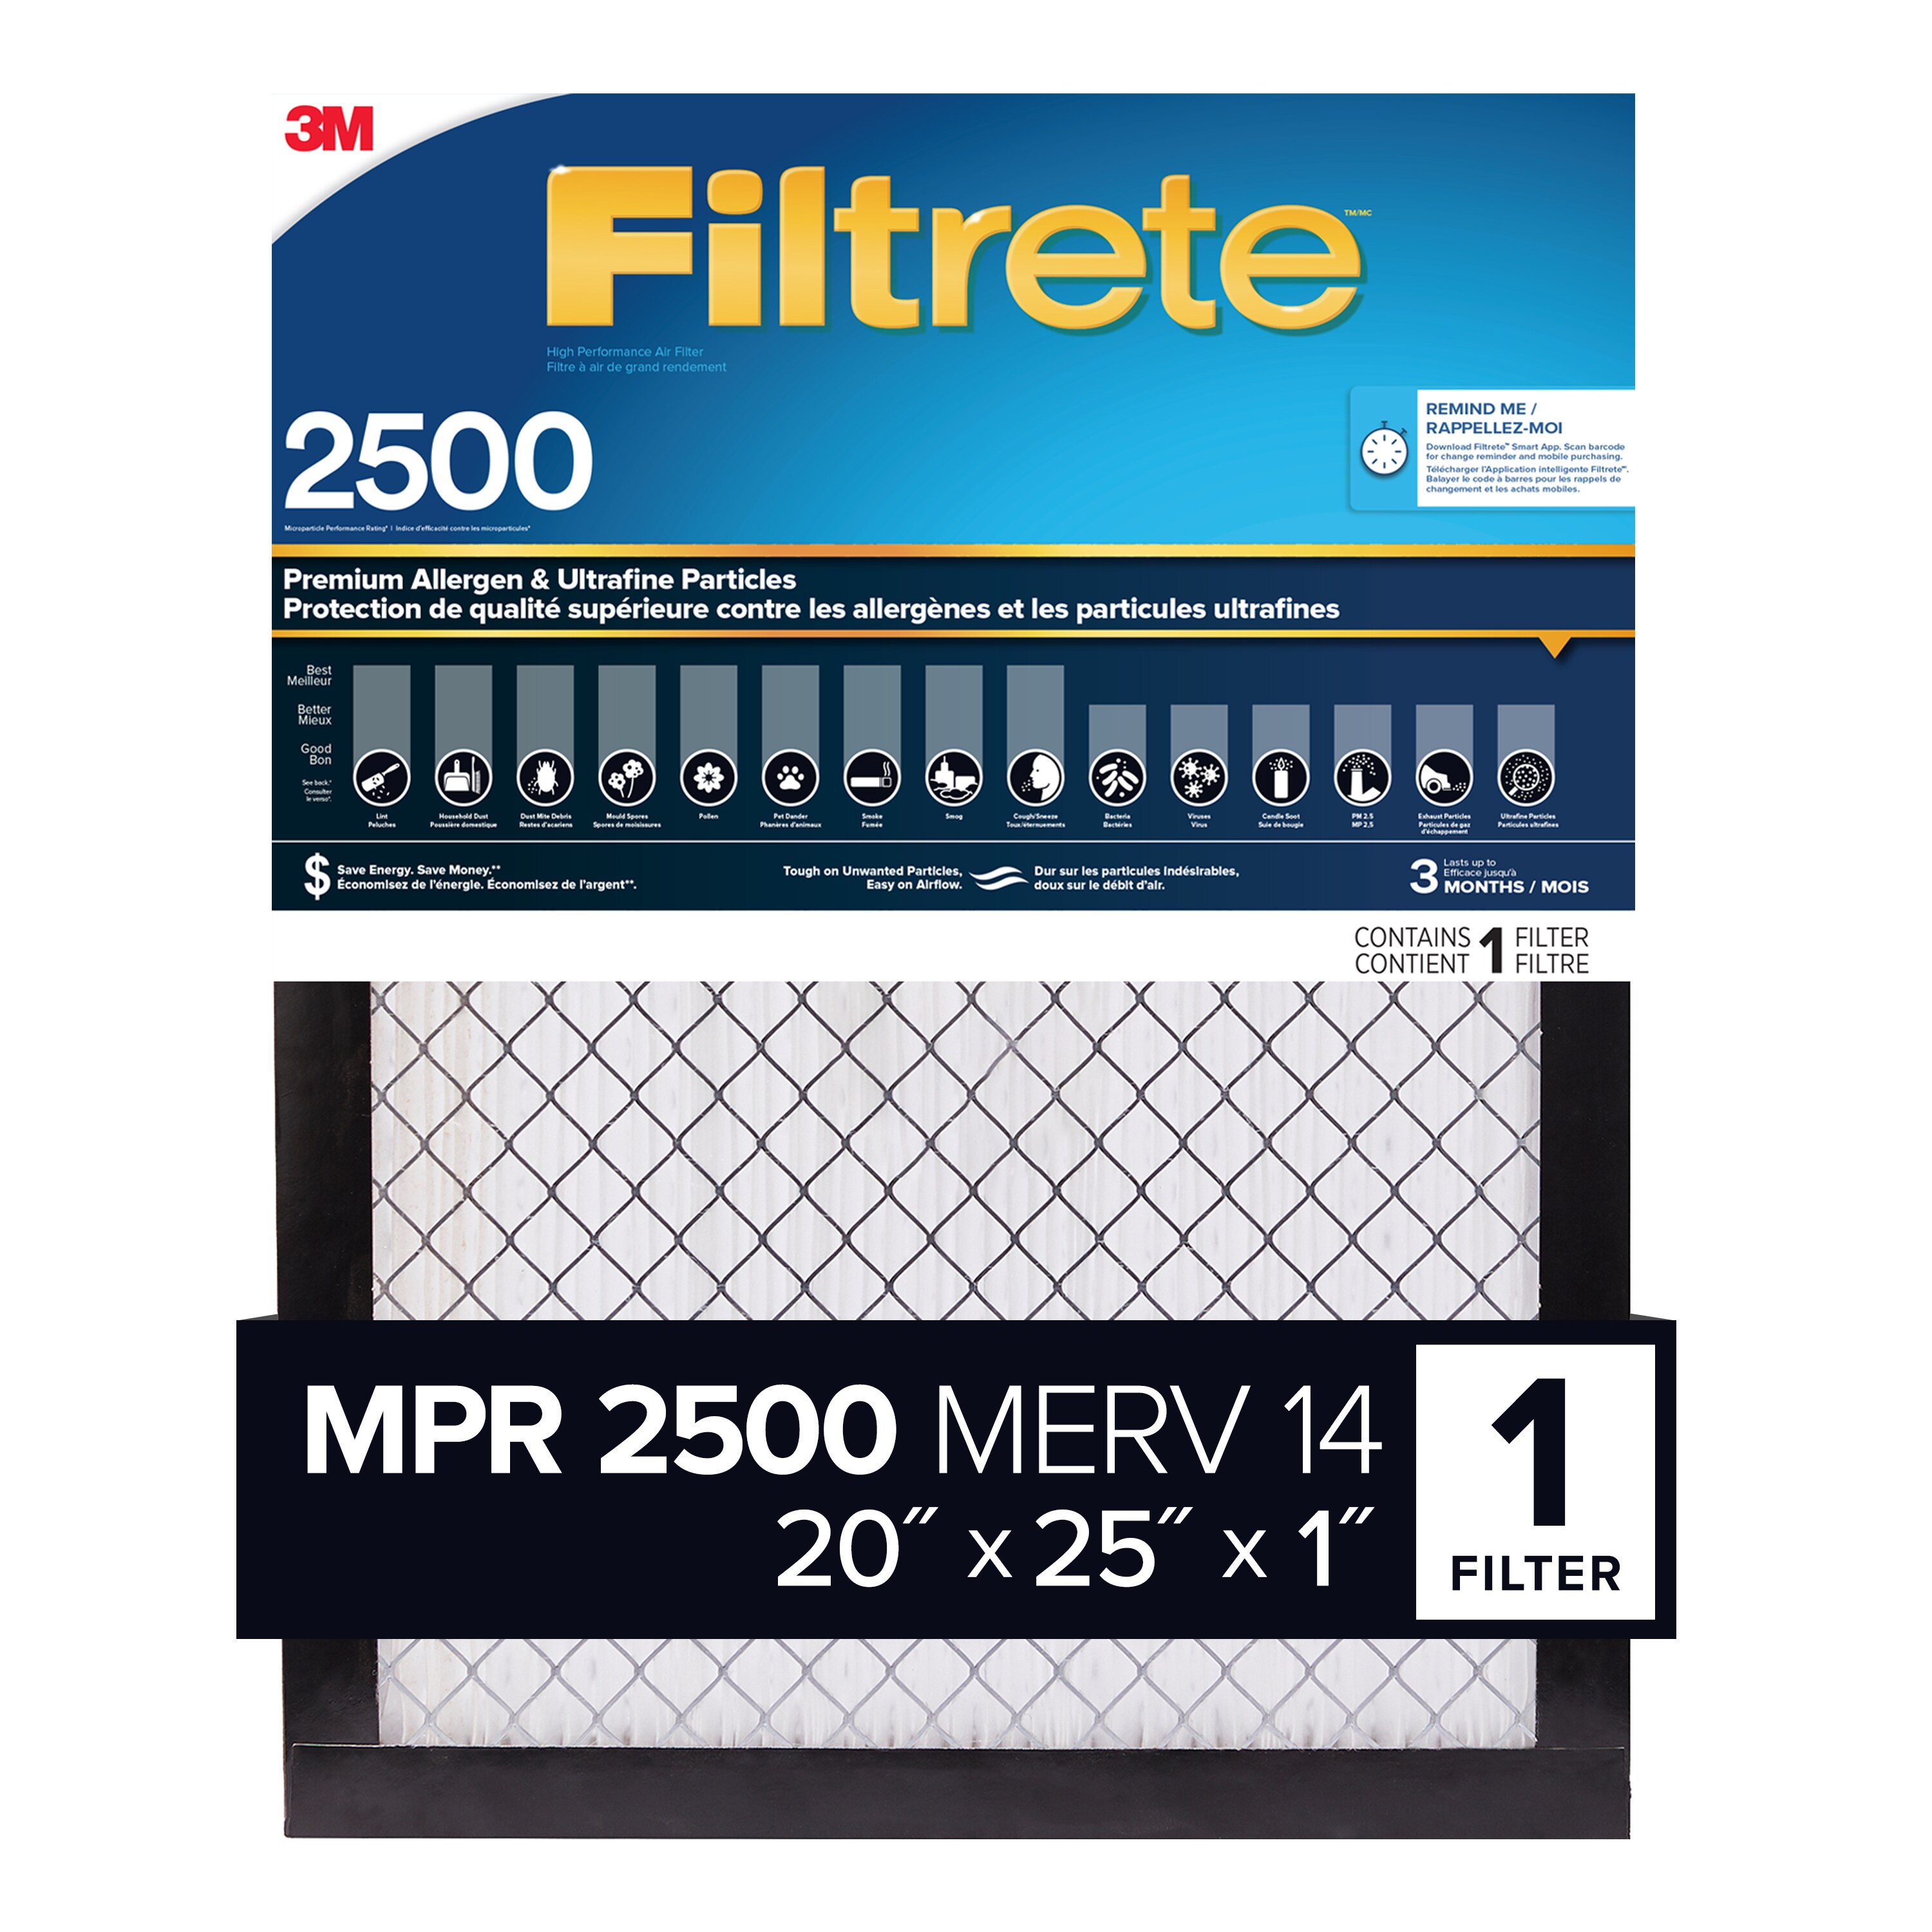 G3/EU3 Filtermatte 1 x 1m 20-22mm FL200 Filtervlies Filterrolle Filterflies